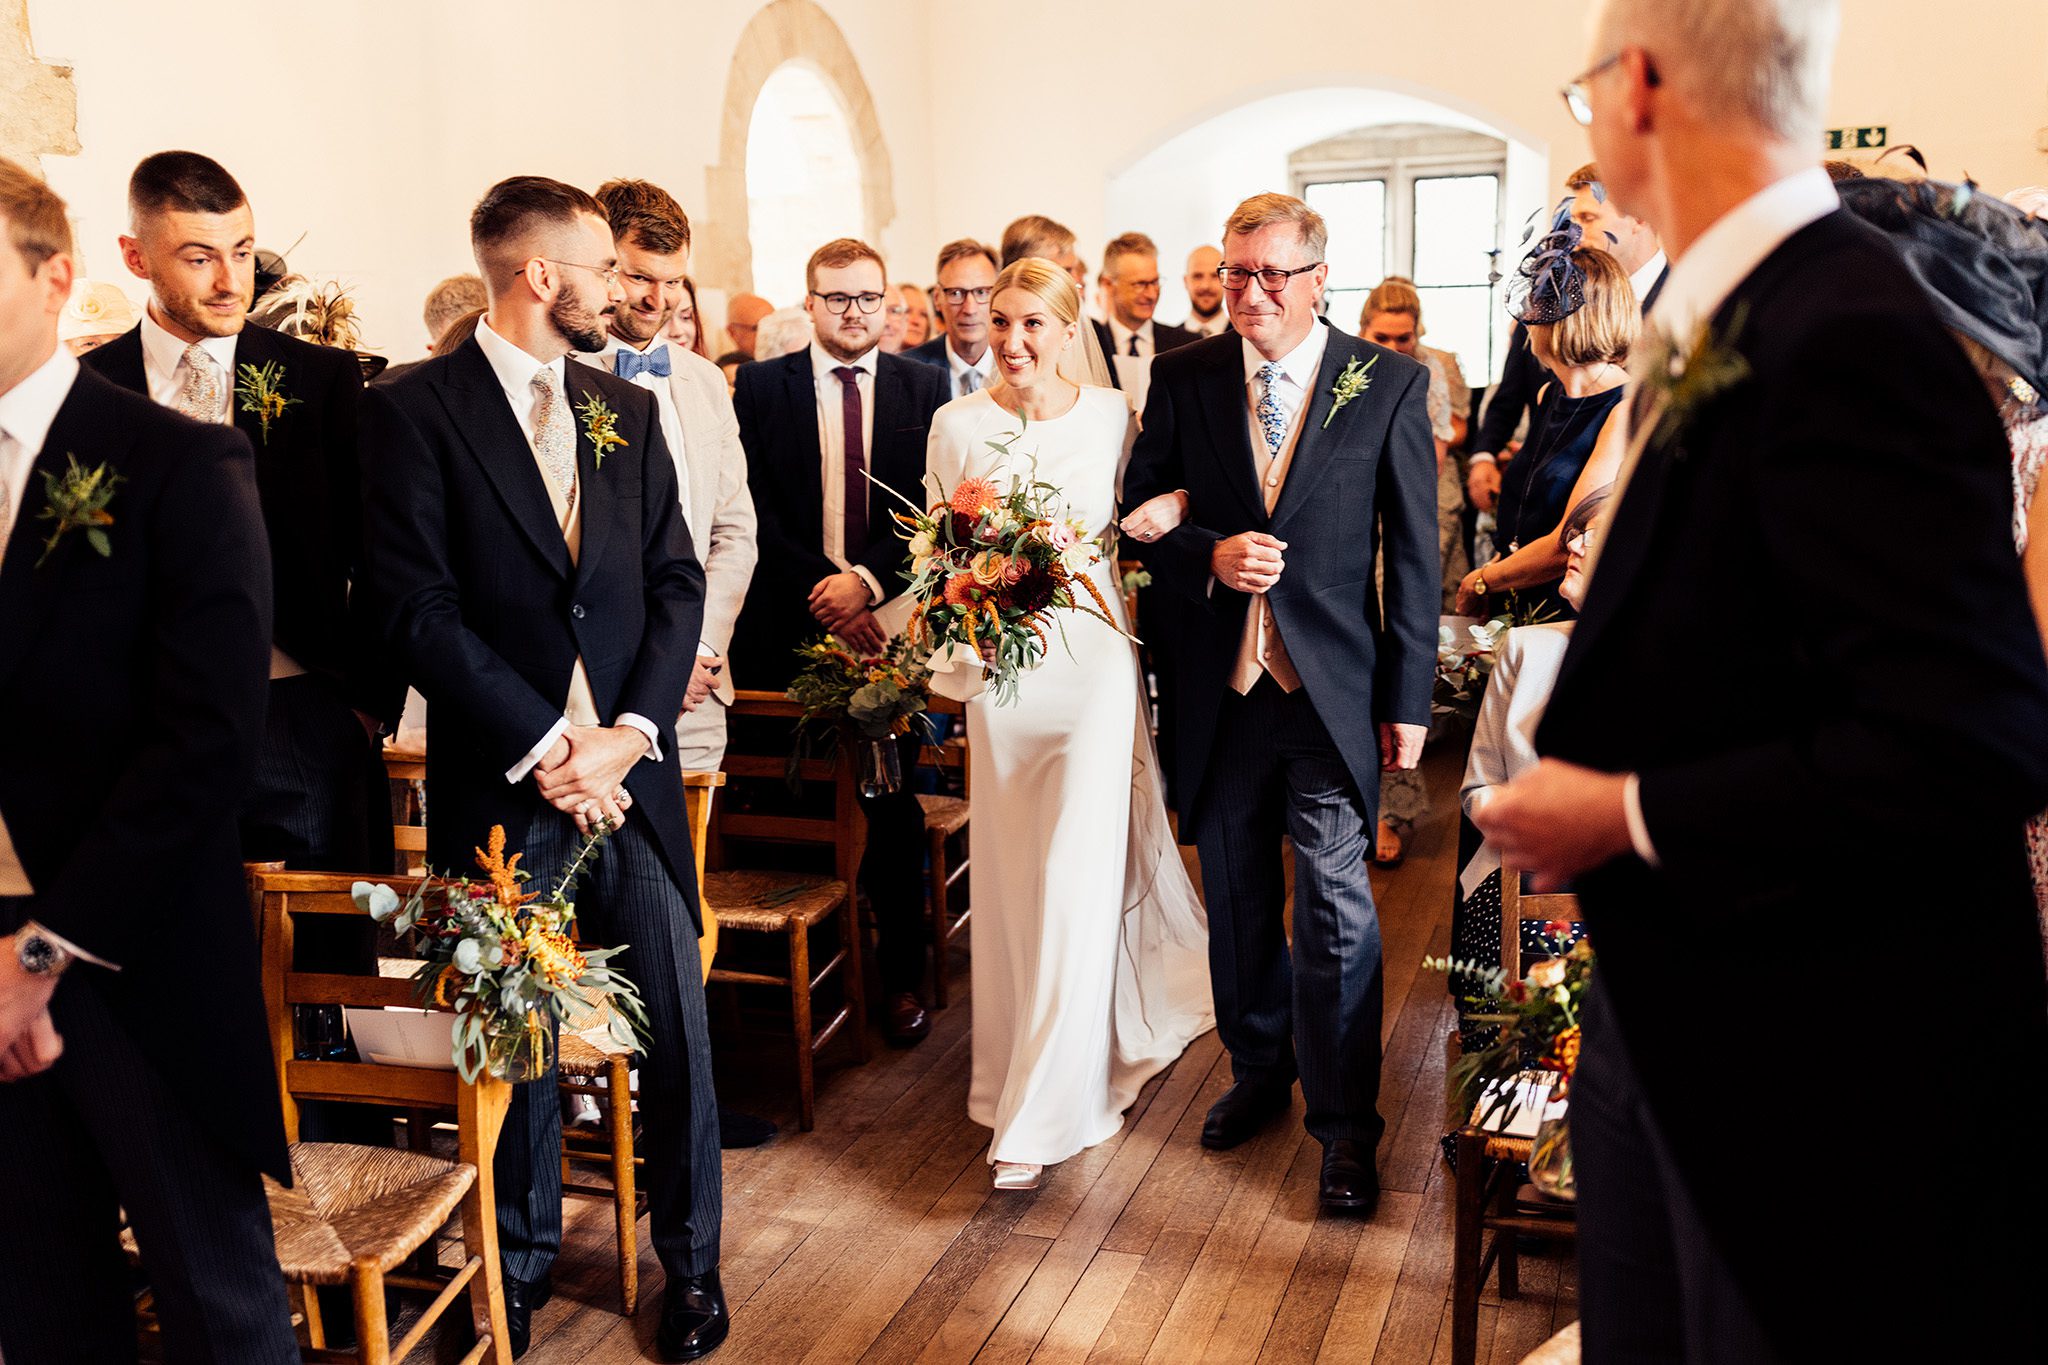 Wedding ceremonies in the Norman Chapel